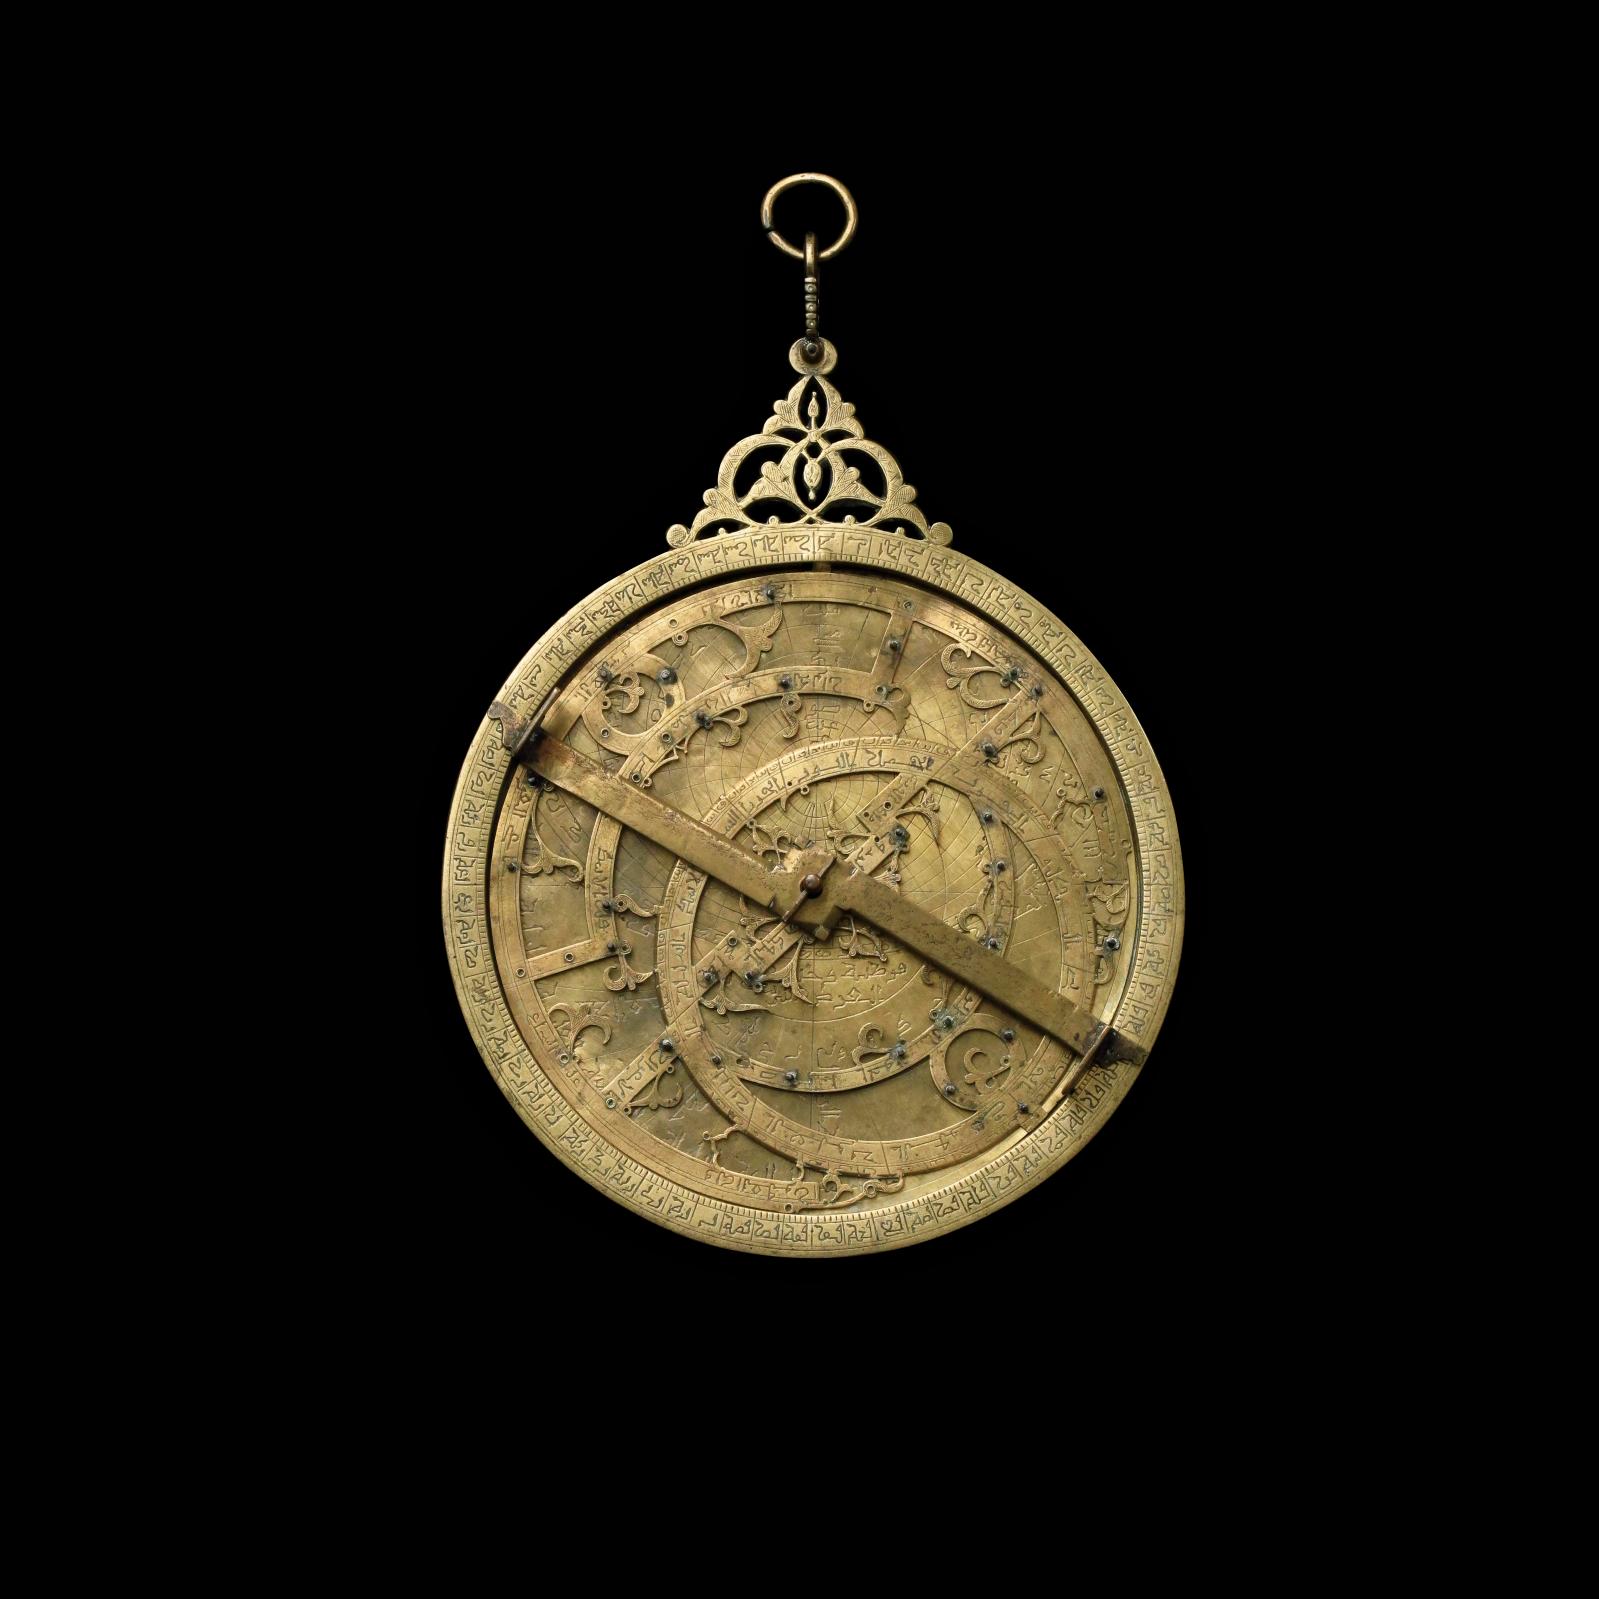 Maroc, Fès, XIVe siècle, Muhammad Ibn Qasim al-Qurtubi. Astrolabe en laiton doré, diam. 25,2 cm.Paris, Drouot, 2 février 2015. Tessier & Sarrou et Ass